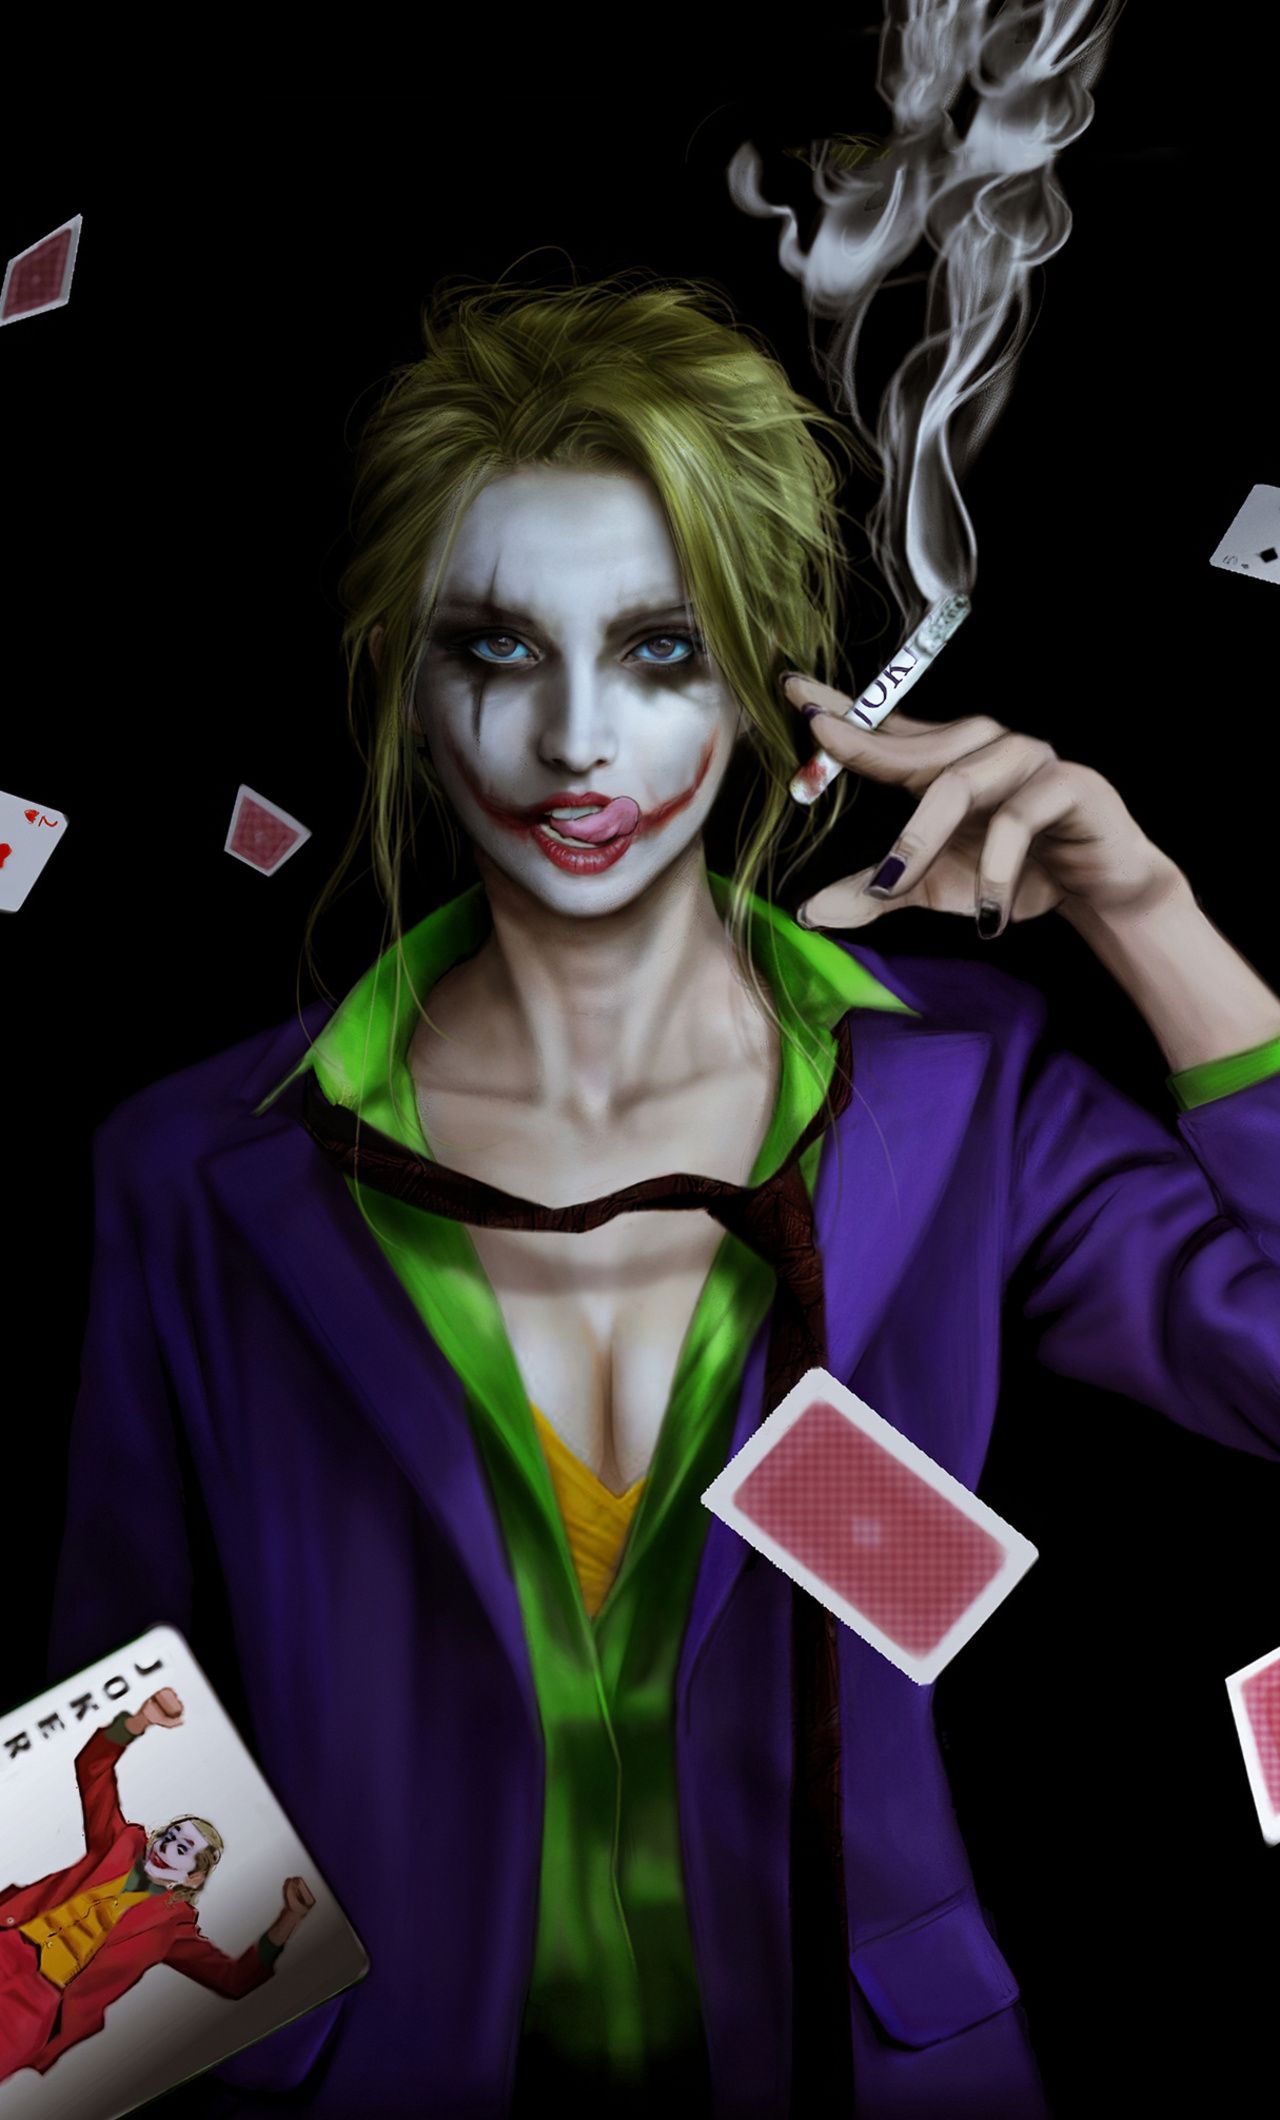 Joker Girl Smoking iPhone HD 4k Wallpaper, Image